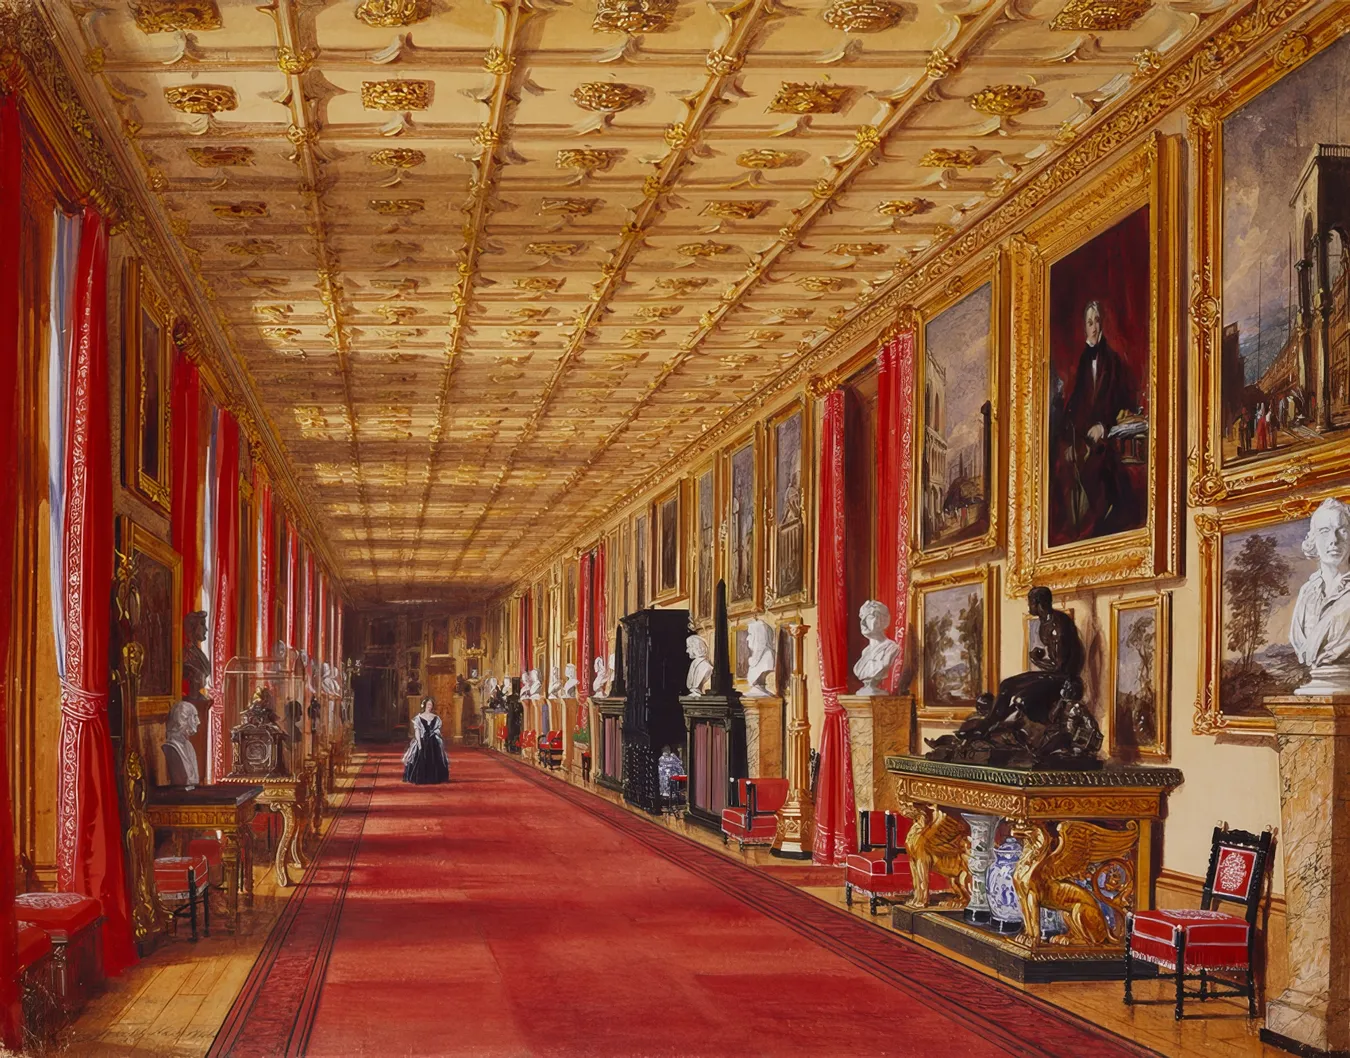 https://commons.wikimedia.org/wiki/File:Grand_Corridor,_Windsor_Castle,_1846.jpg